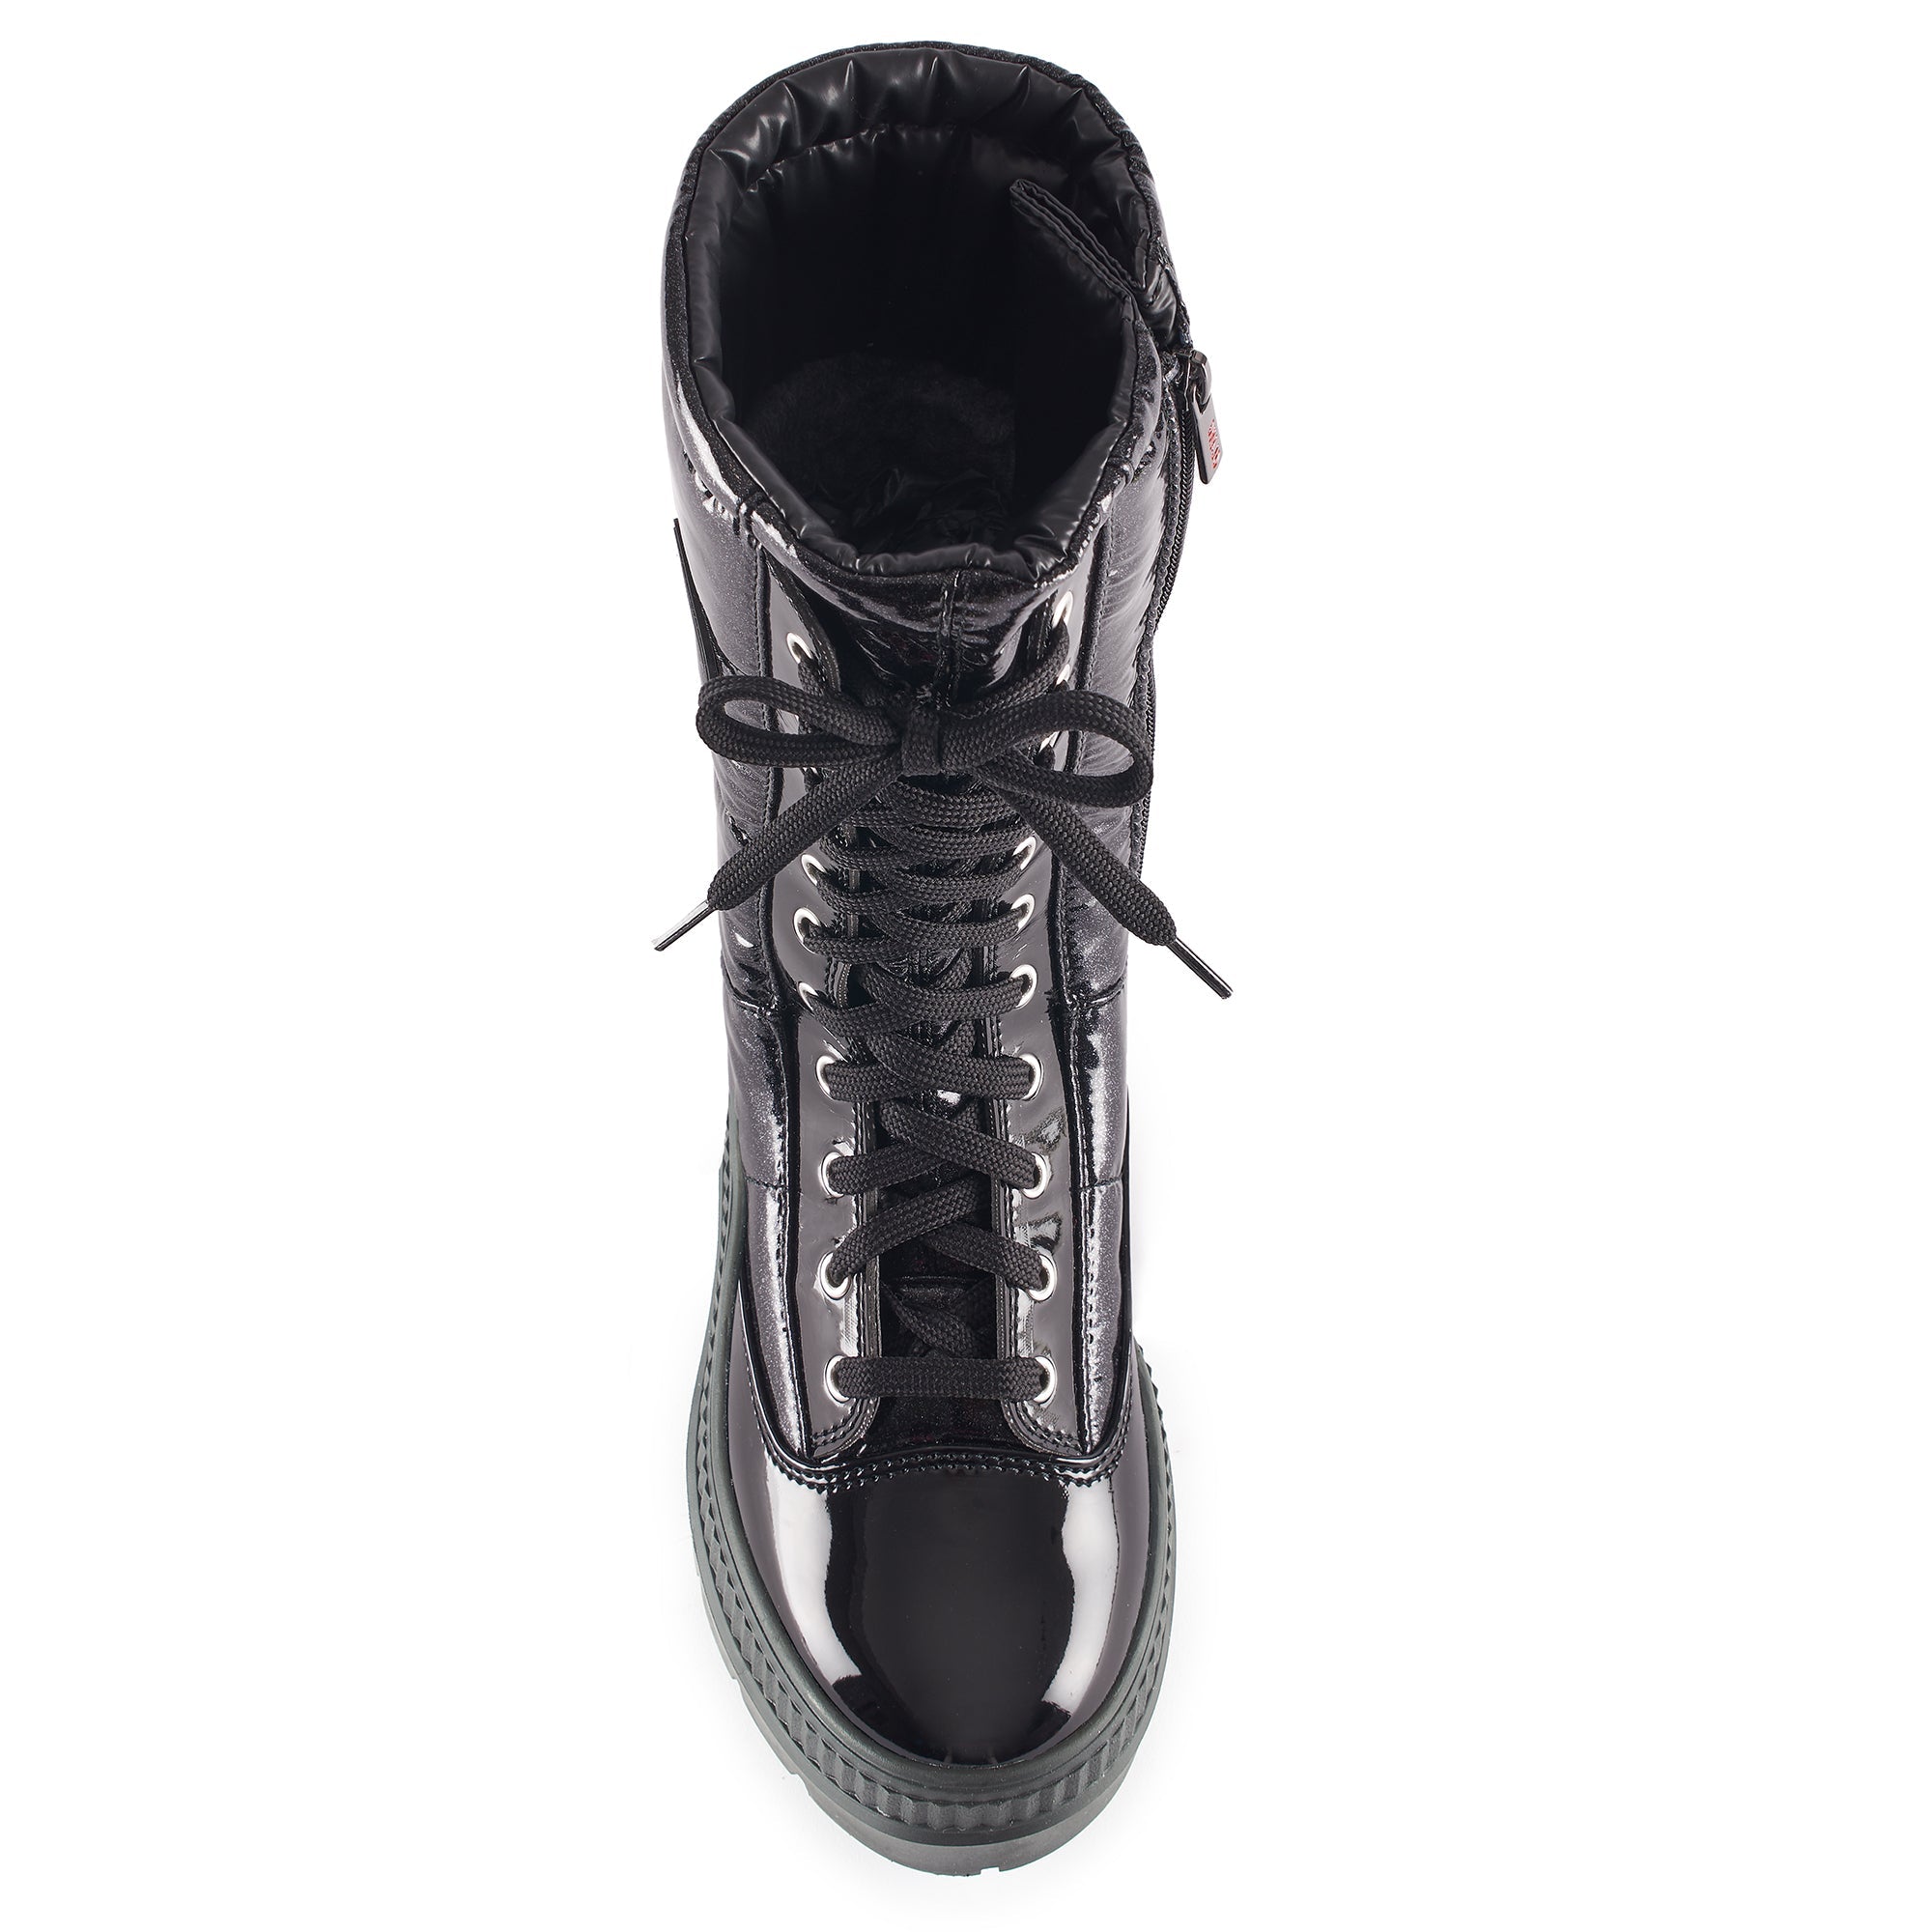 OLANG MAGNET - Women's winter boots - FINAL SALE - Boutique Bubbles